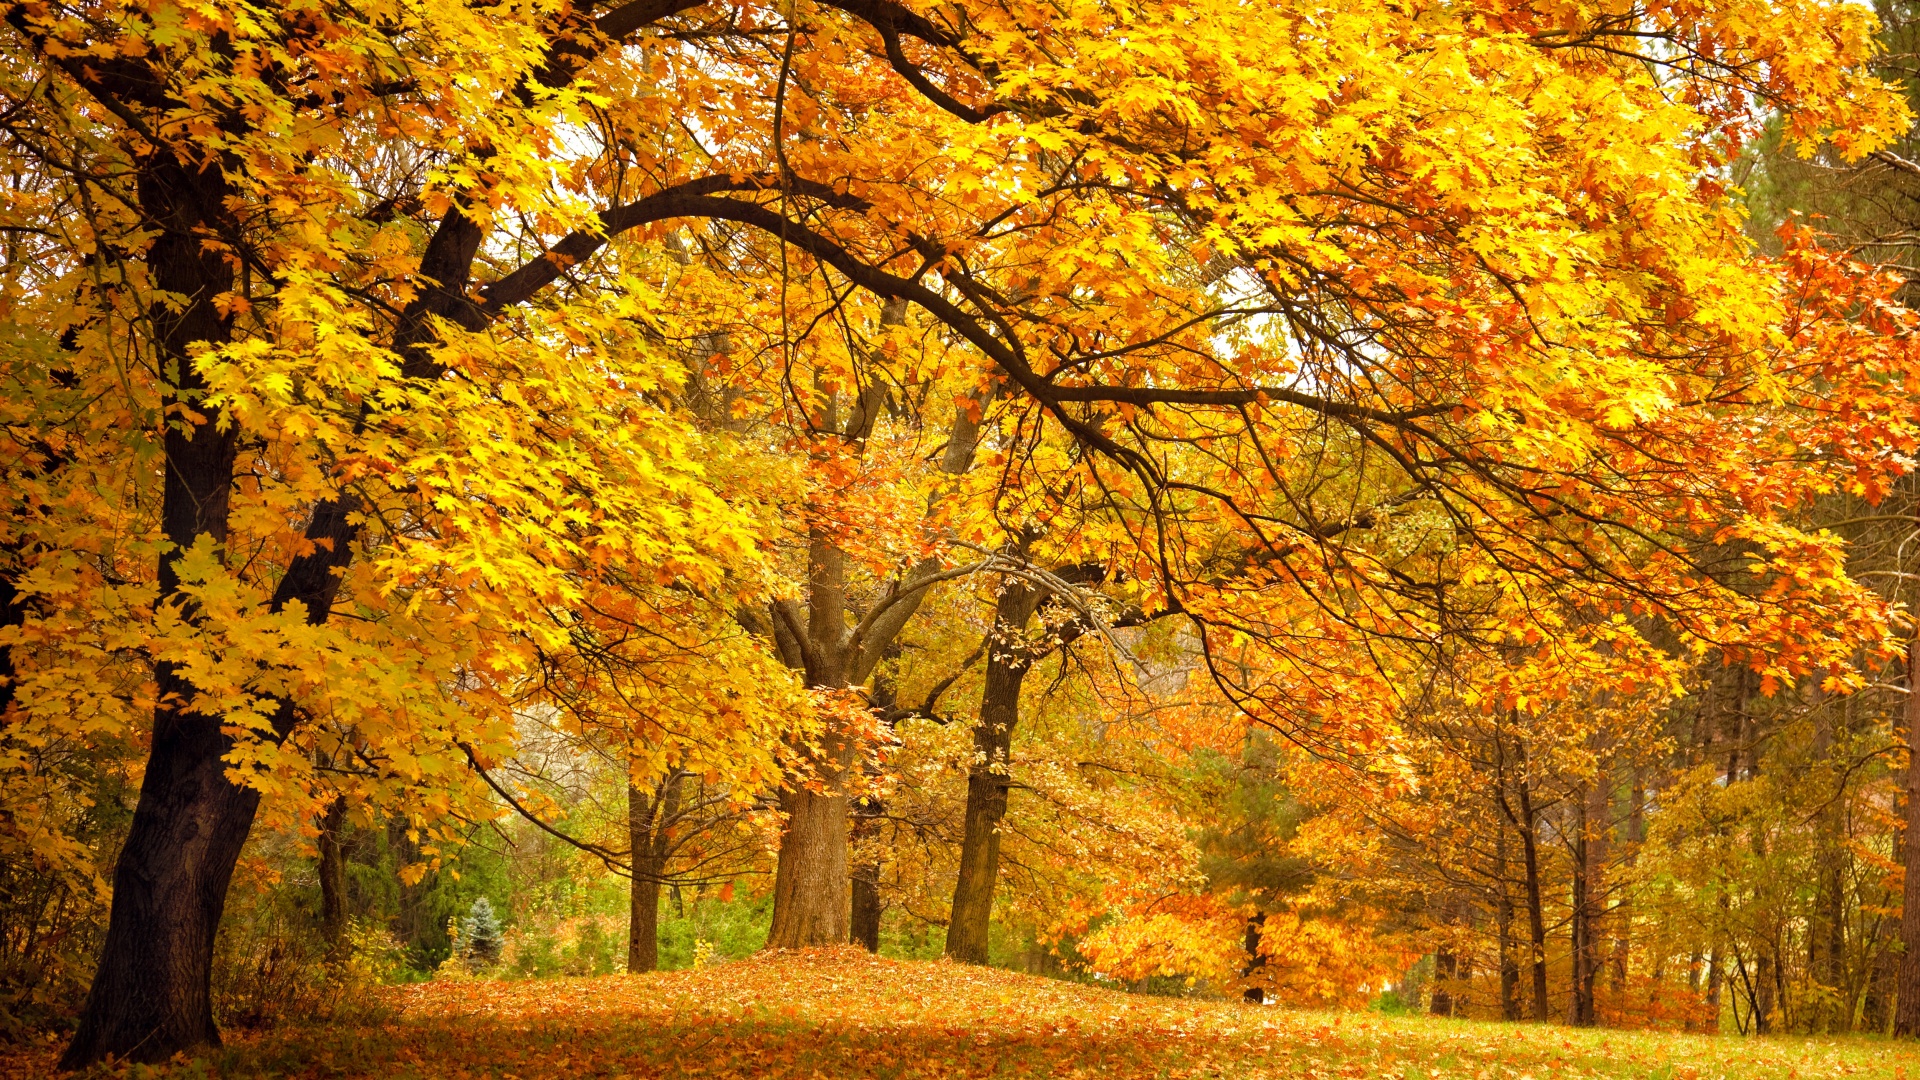 公园的树木,叶子,金色黄色的秋天风景桌面壁纸